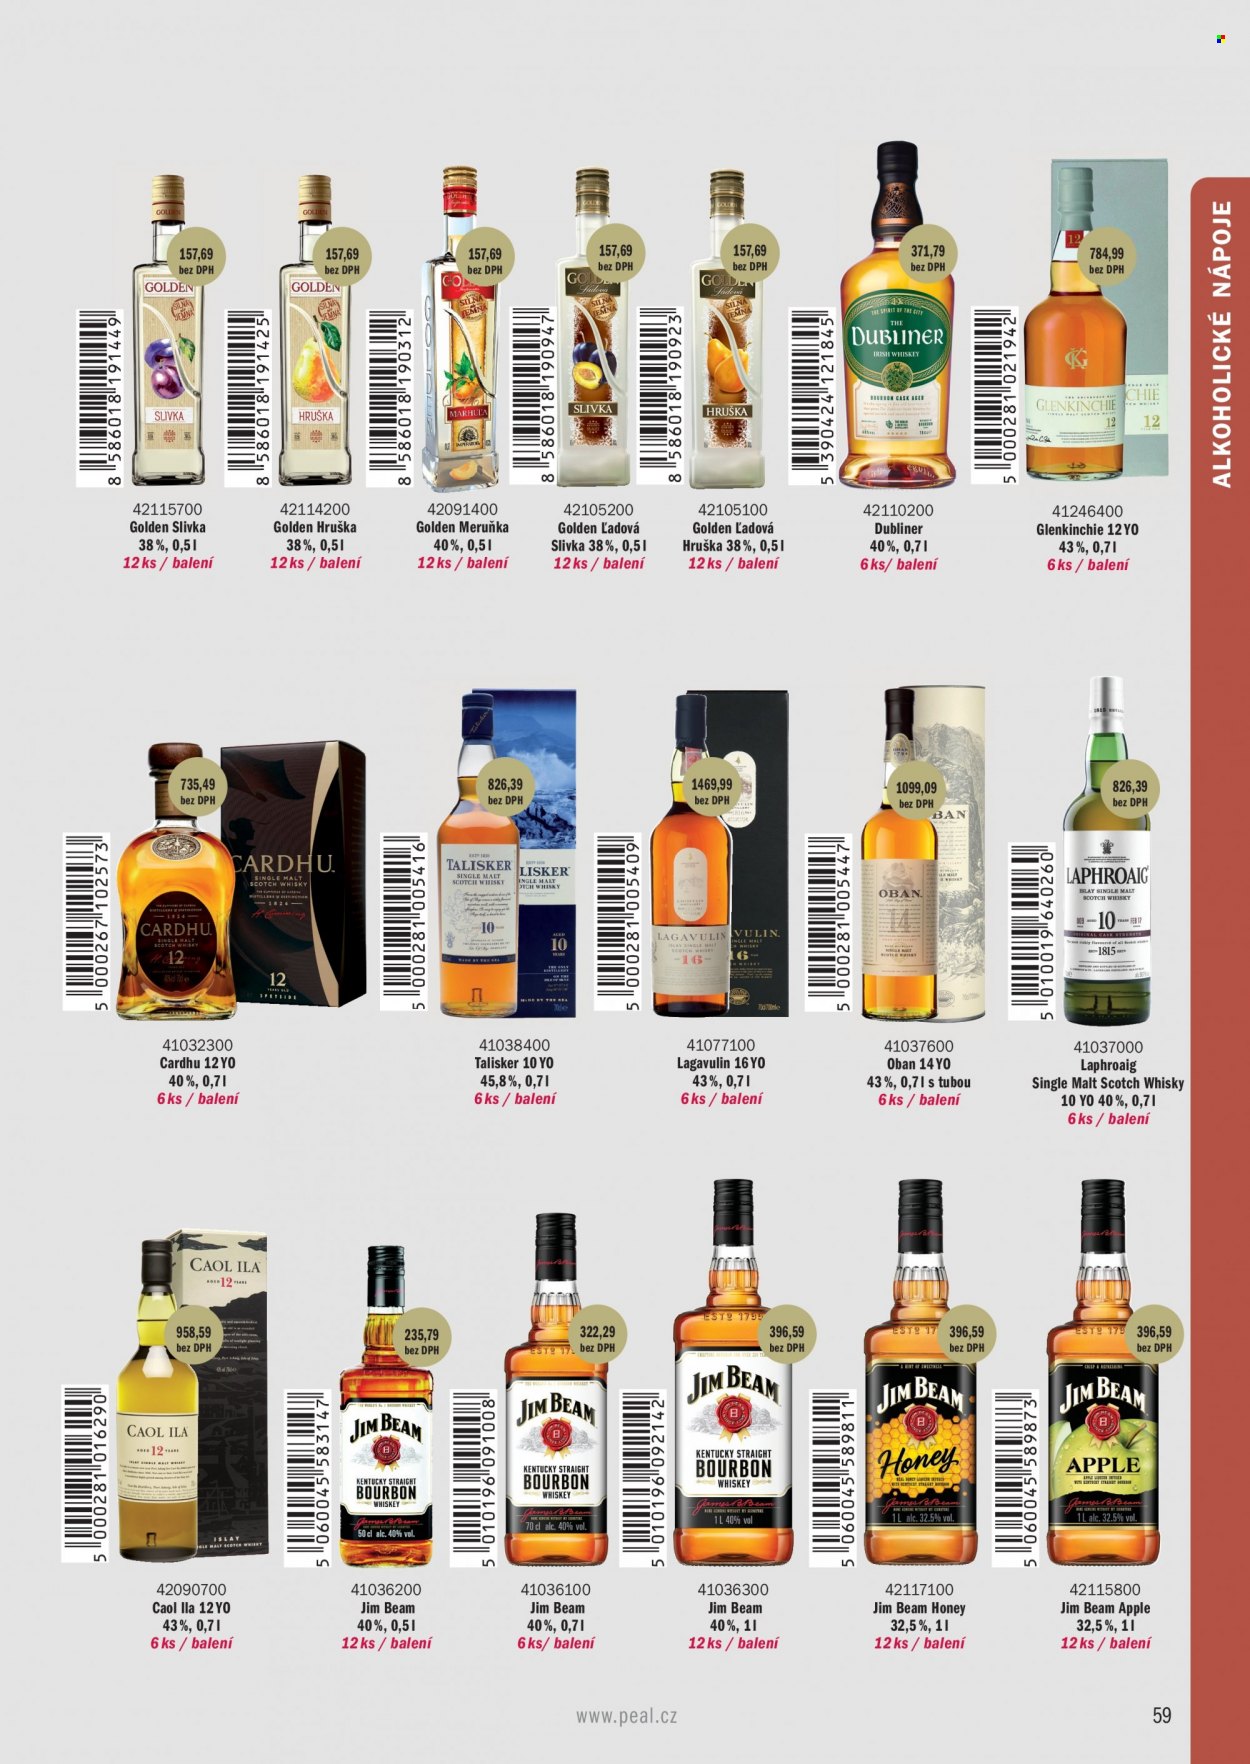 Leták PEAL - Produkty v akci - alkohol, whisky, Bourbon, slivovice, hruškovice, Jim Beam, Jim Beam Honey, Jim Beam Apple, Golden, Meruňka, Talisker, Laphroaig. Strana 17.